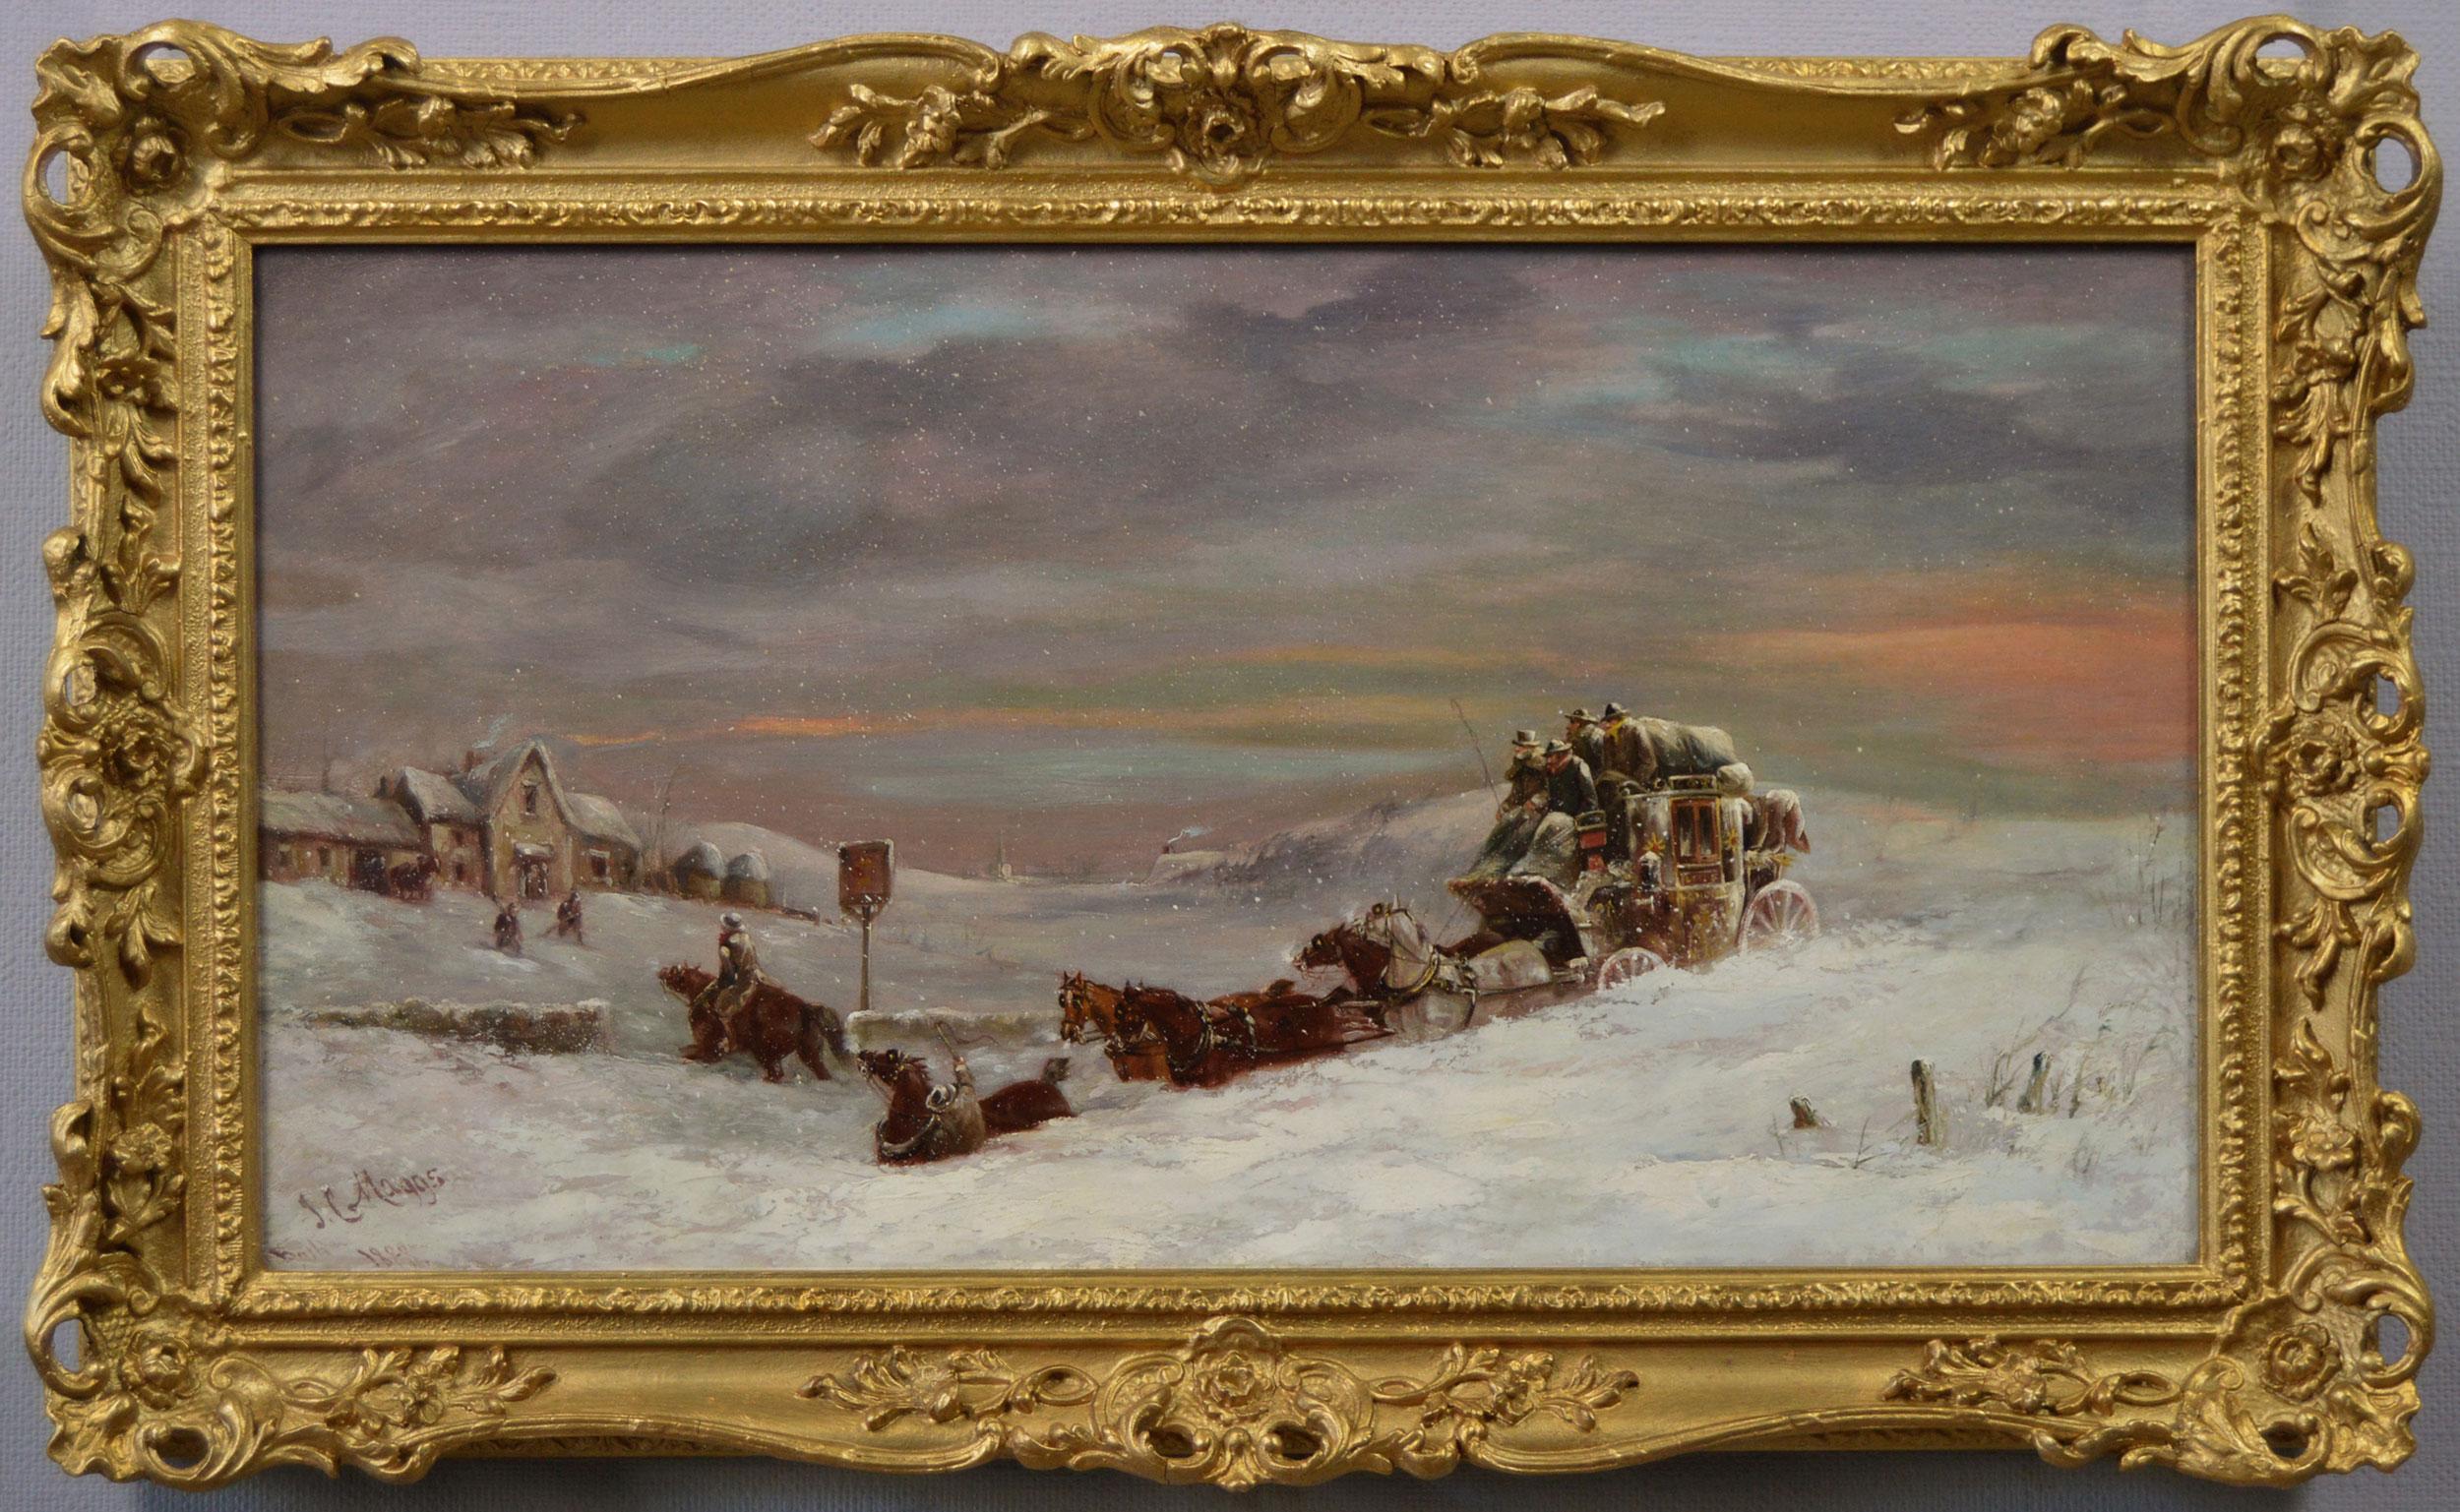 Wintercoaching-Ölgemälde eines Postkutschens in einer Schneedrift aus dem 19. Jahrhundert